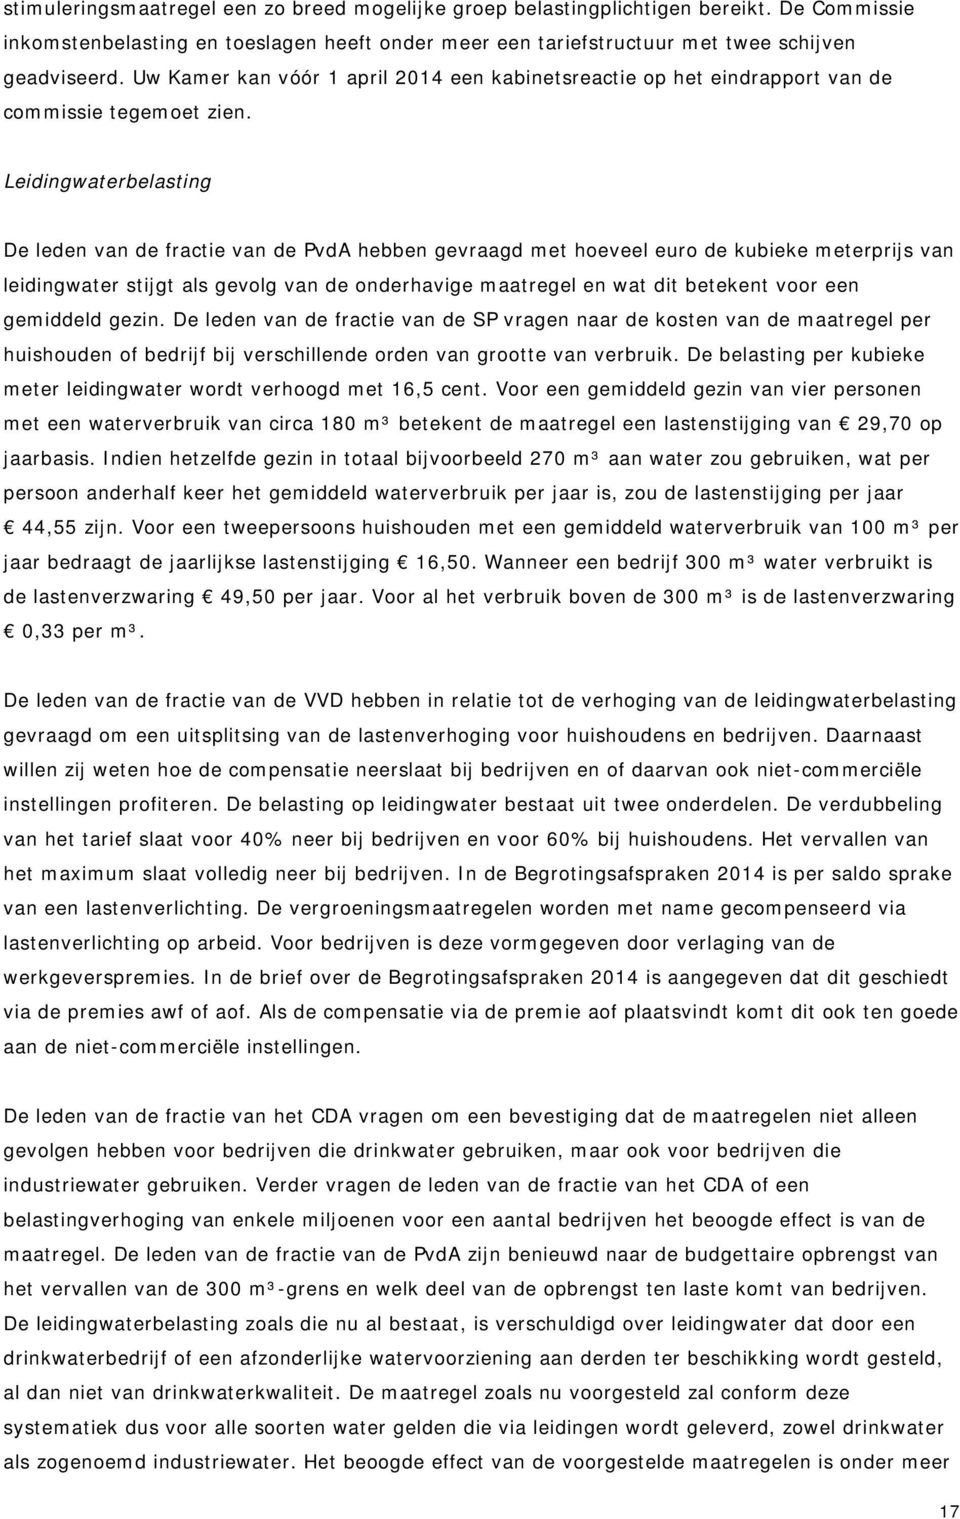 Leidingwaterbelasting De leden van de fractie van de PvdA hebben gevraagd met hoeveel euro de kubieke meterprijs van leidingwater stijgt als gevolg van de onderhavige maatregel en wat dit betekent